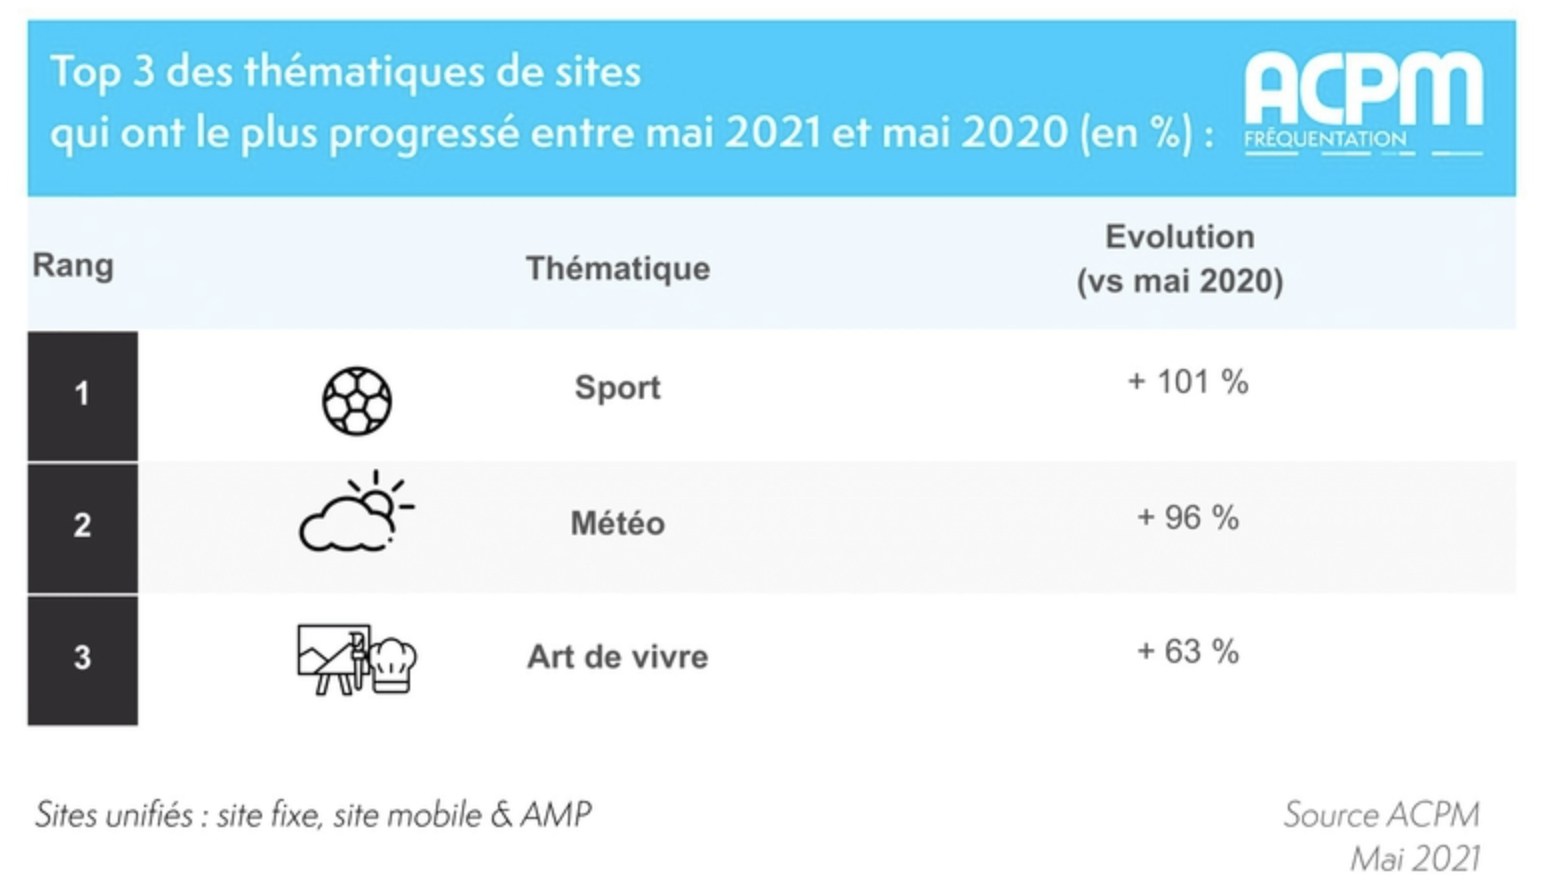 Les 3 thématiques de sites qui ont le plus progressé entre mai 2021 et mai 2020 (en %)